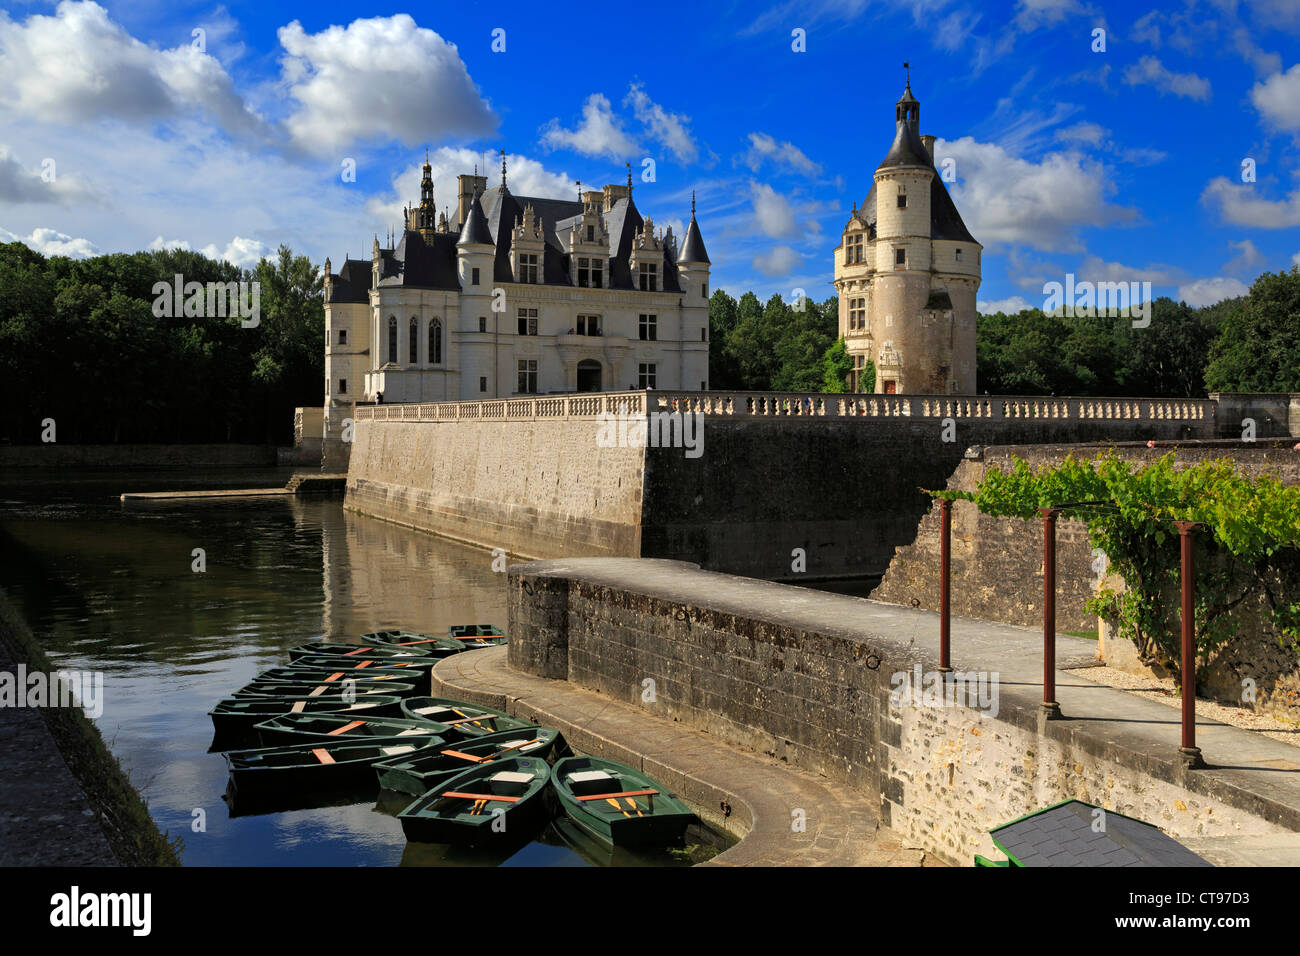 Botes de remo en el Chateau Chenonceau, Valle del Loira, Francia. Palacio renacentista del siglo XVI sobre el río Cher. Foto de stock